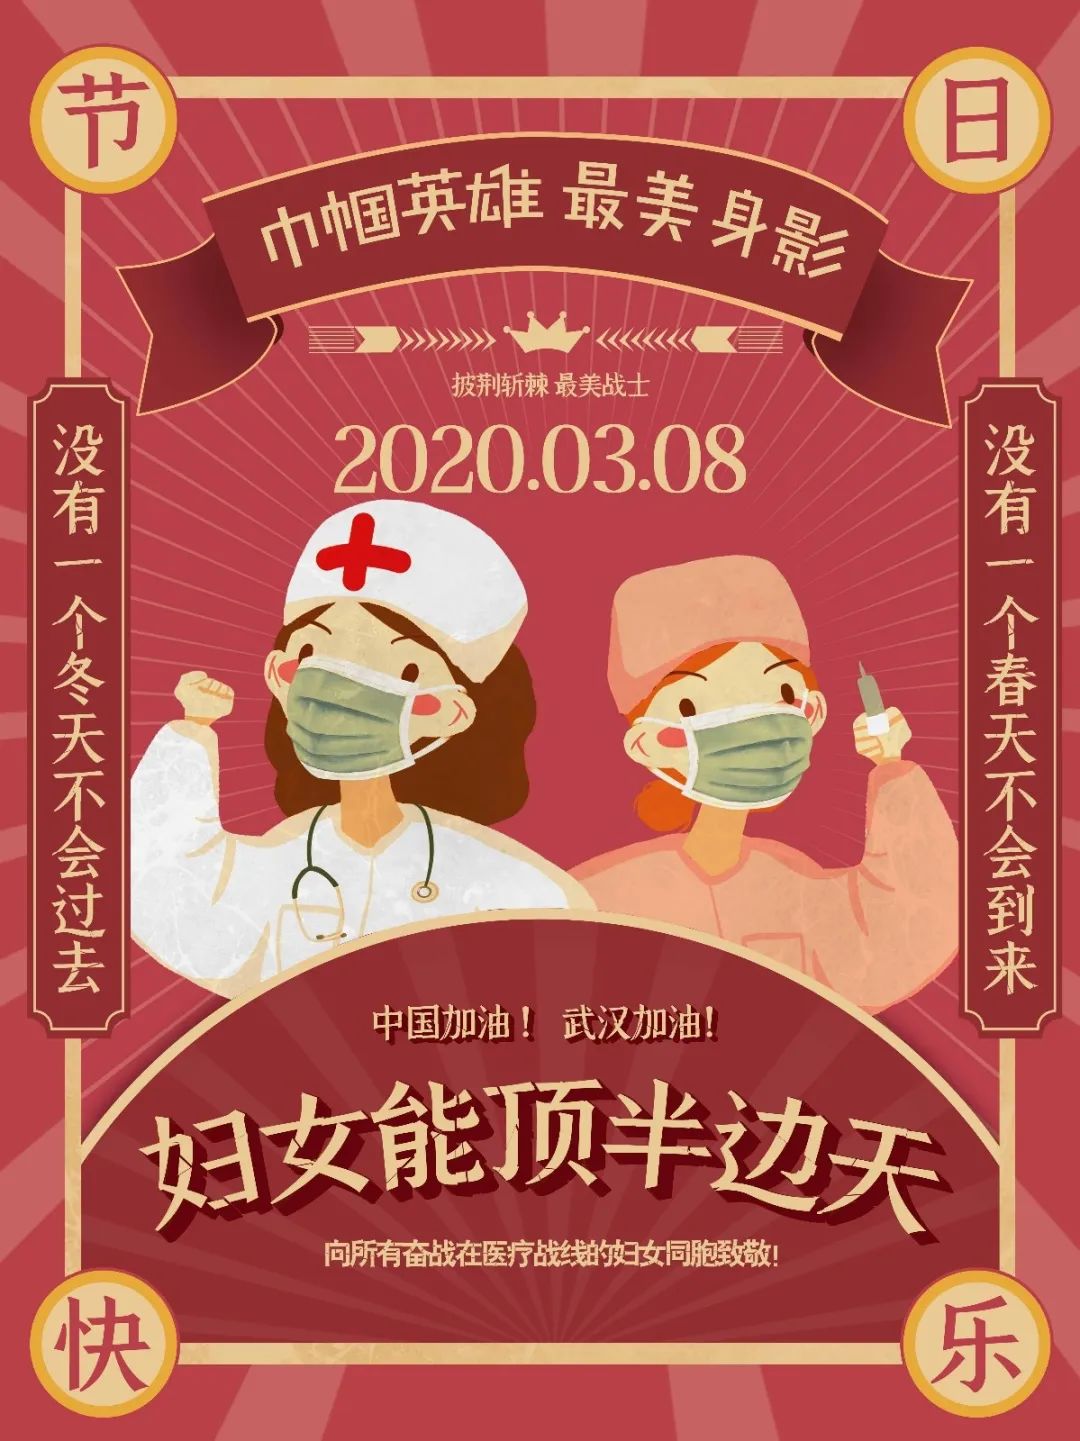 3月8日,妇女节,让奋战在发热门诊和留观病区的曹越和她的护理姐妹们